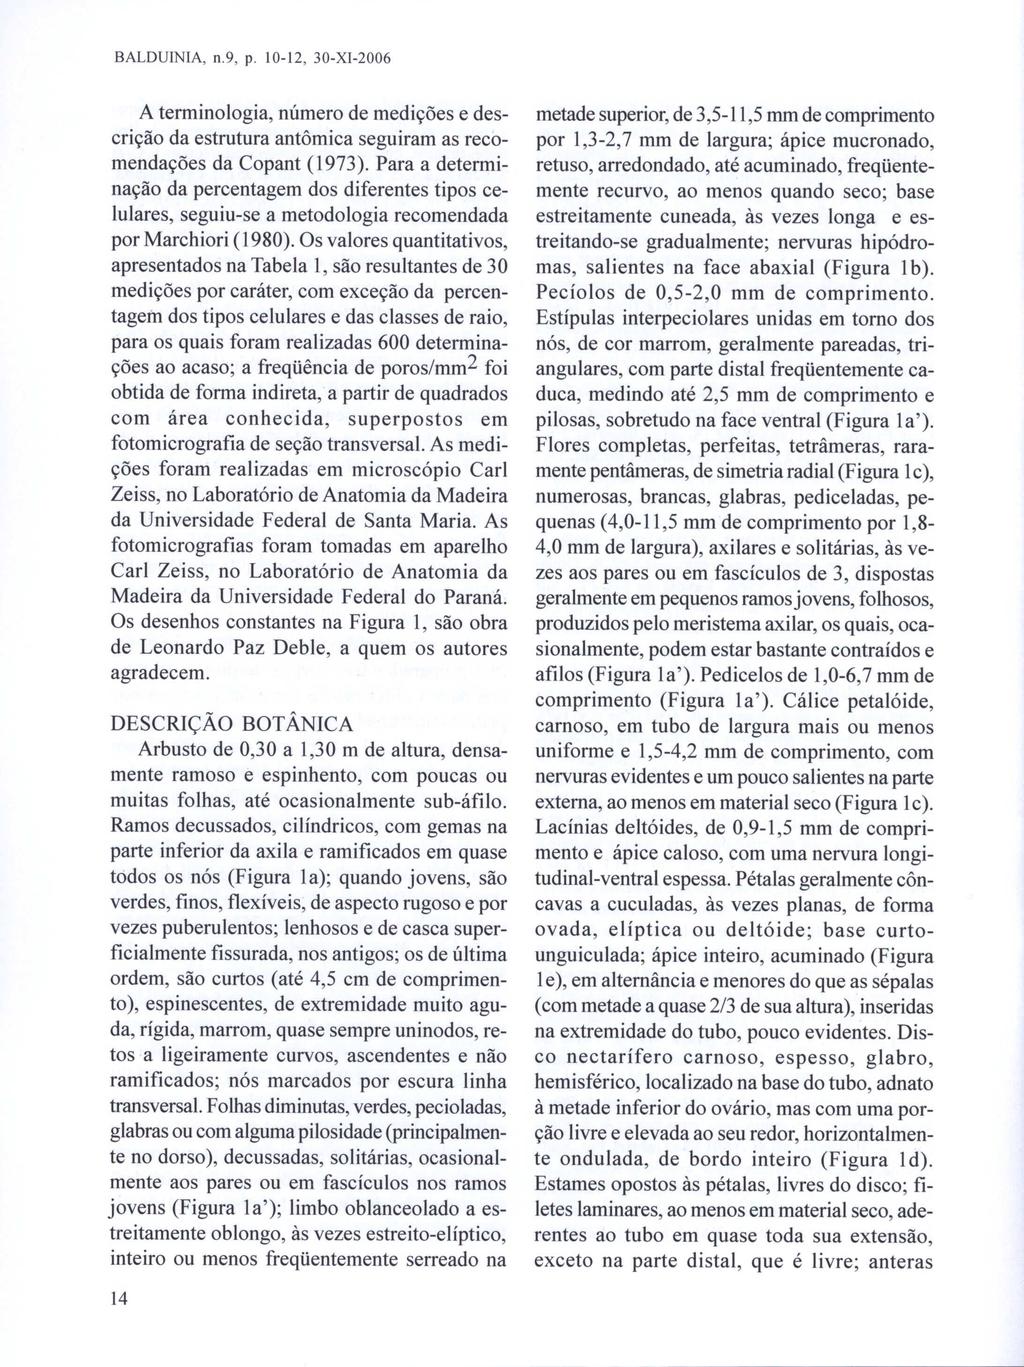 BALDUINIA, n.9, p. 10-12, 30-XI-2006 A terminologia, número de medições e descrição da estrutura antômica seguiram as recomendações da Copant (1973).